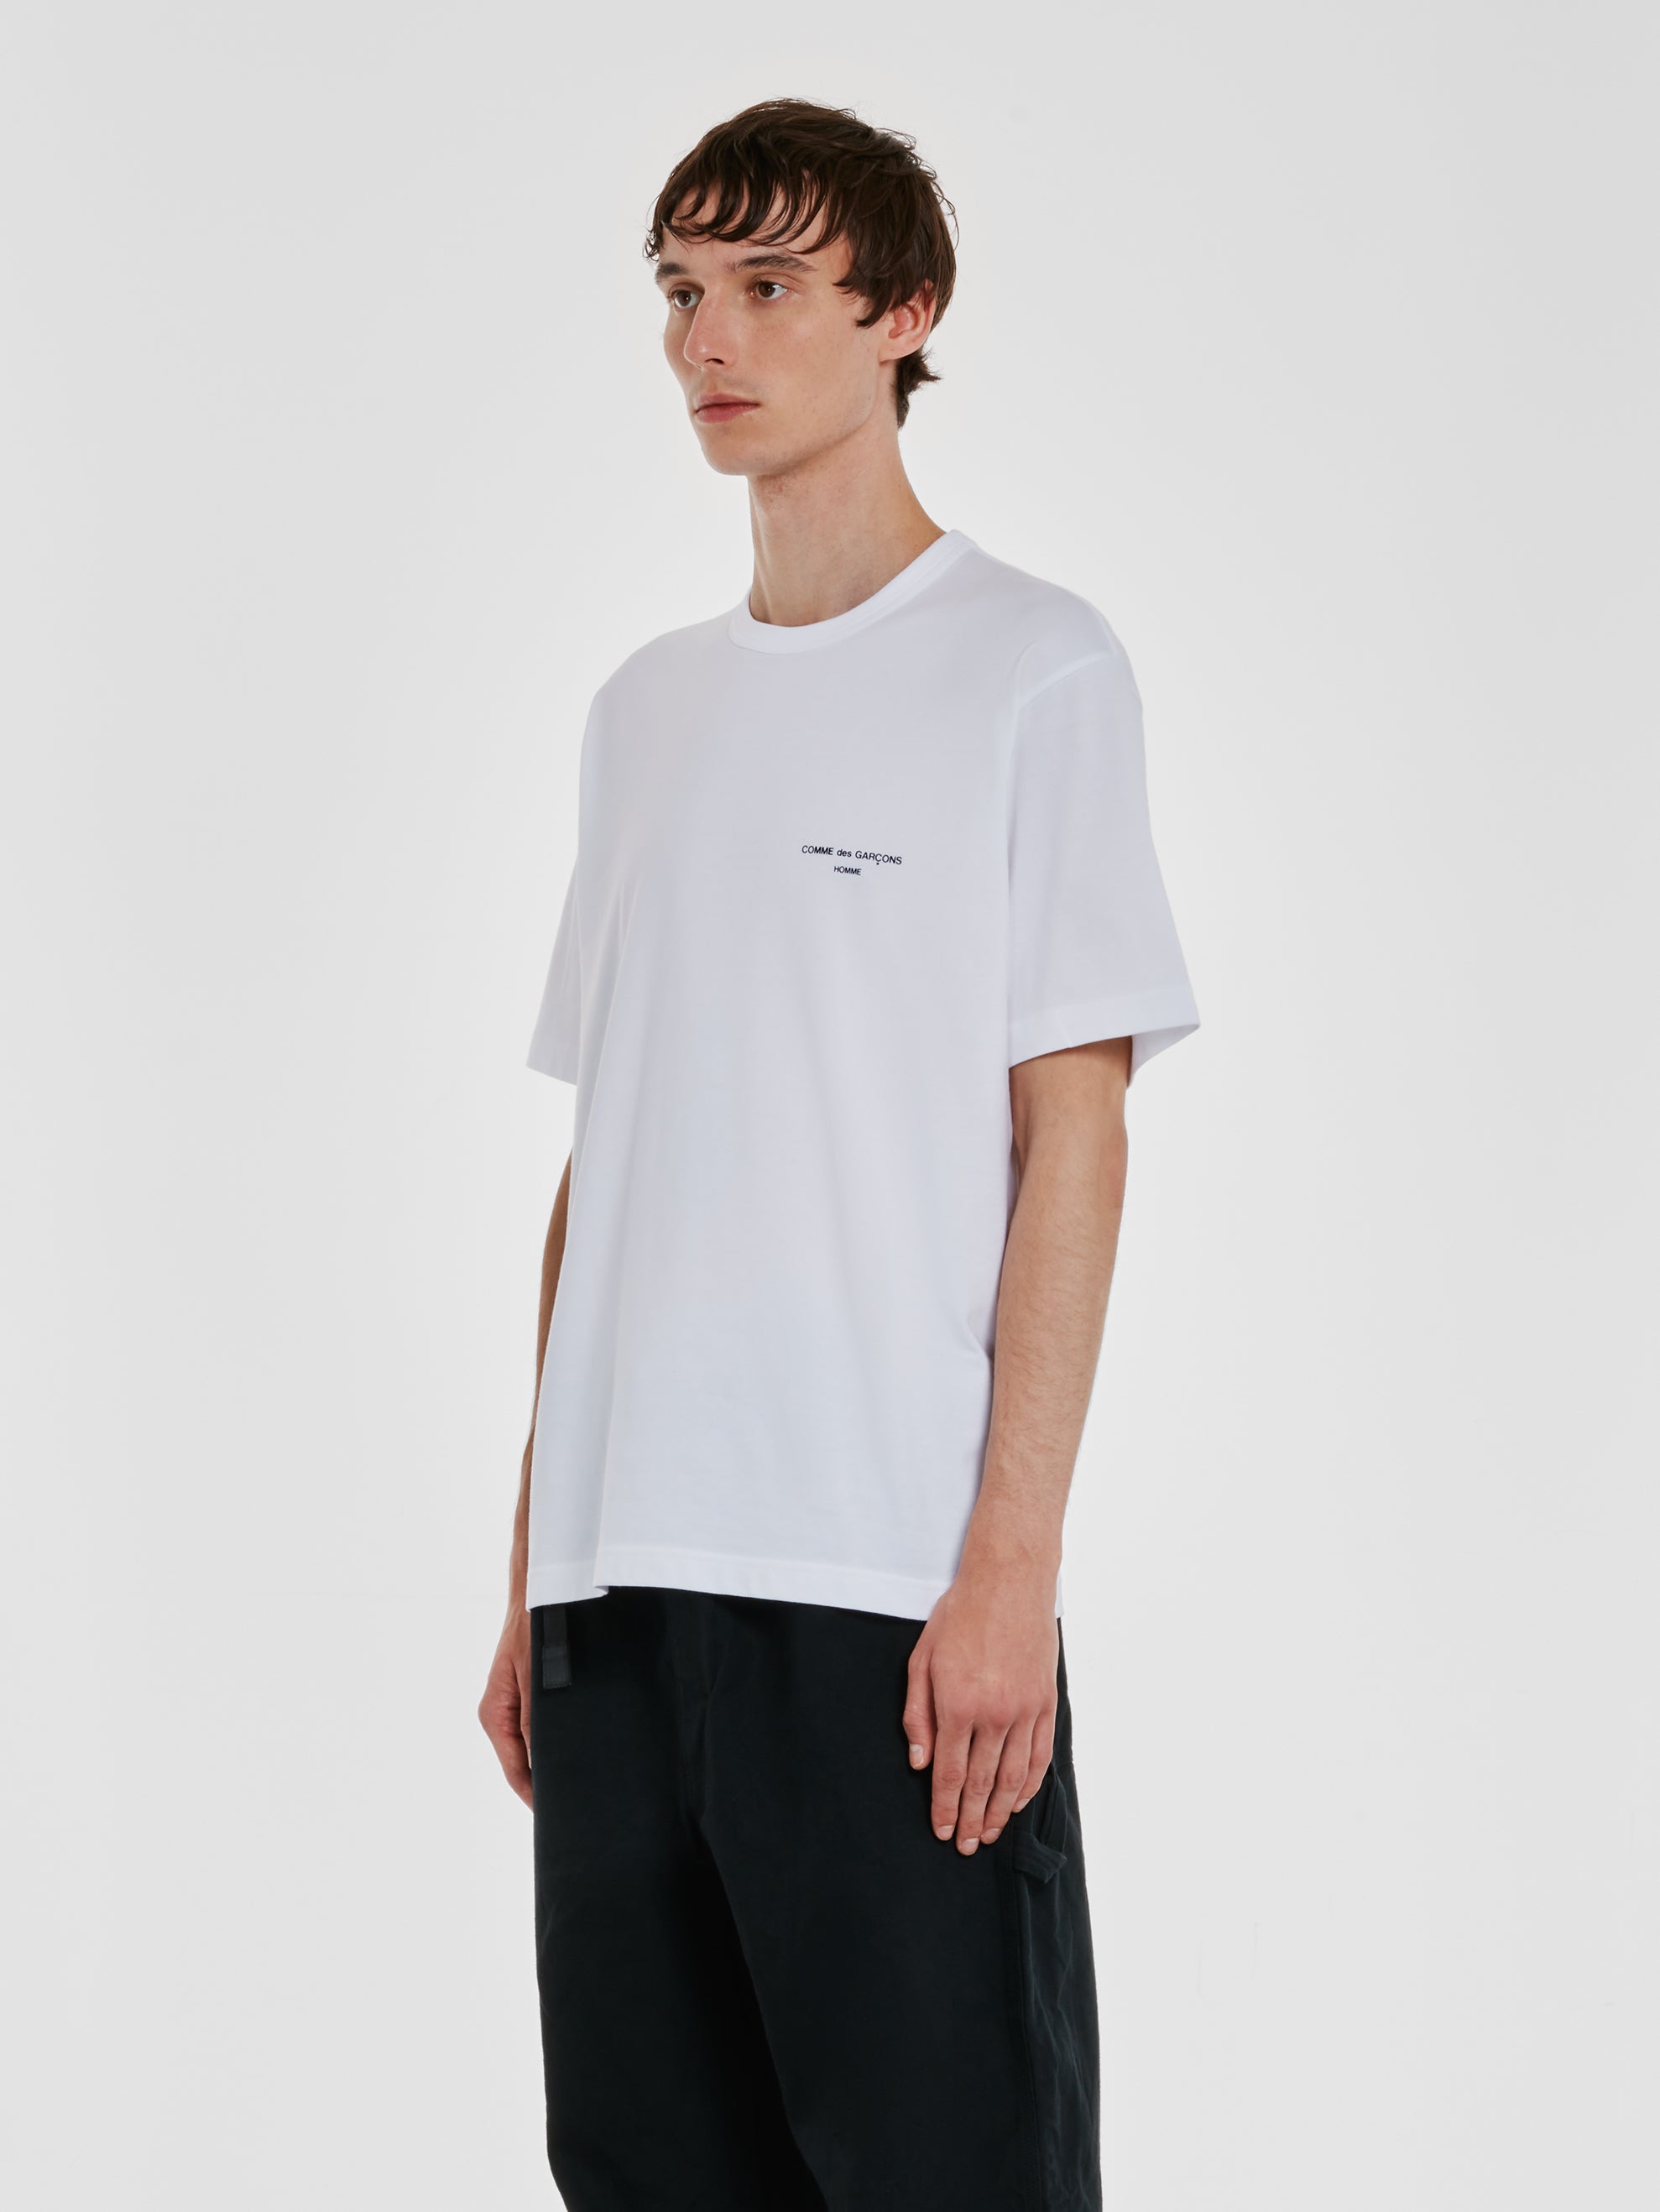 Comme des Garçons Homme - Men’s T-Shirt - (White) view 2